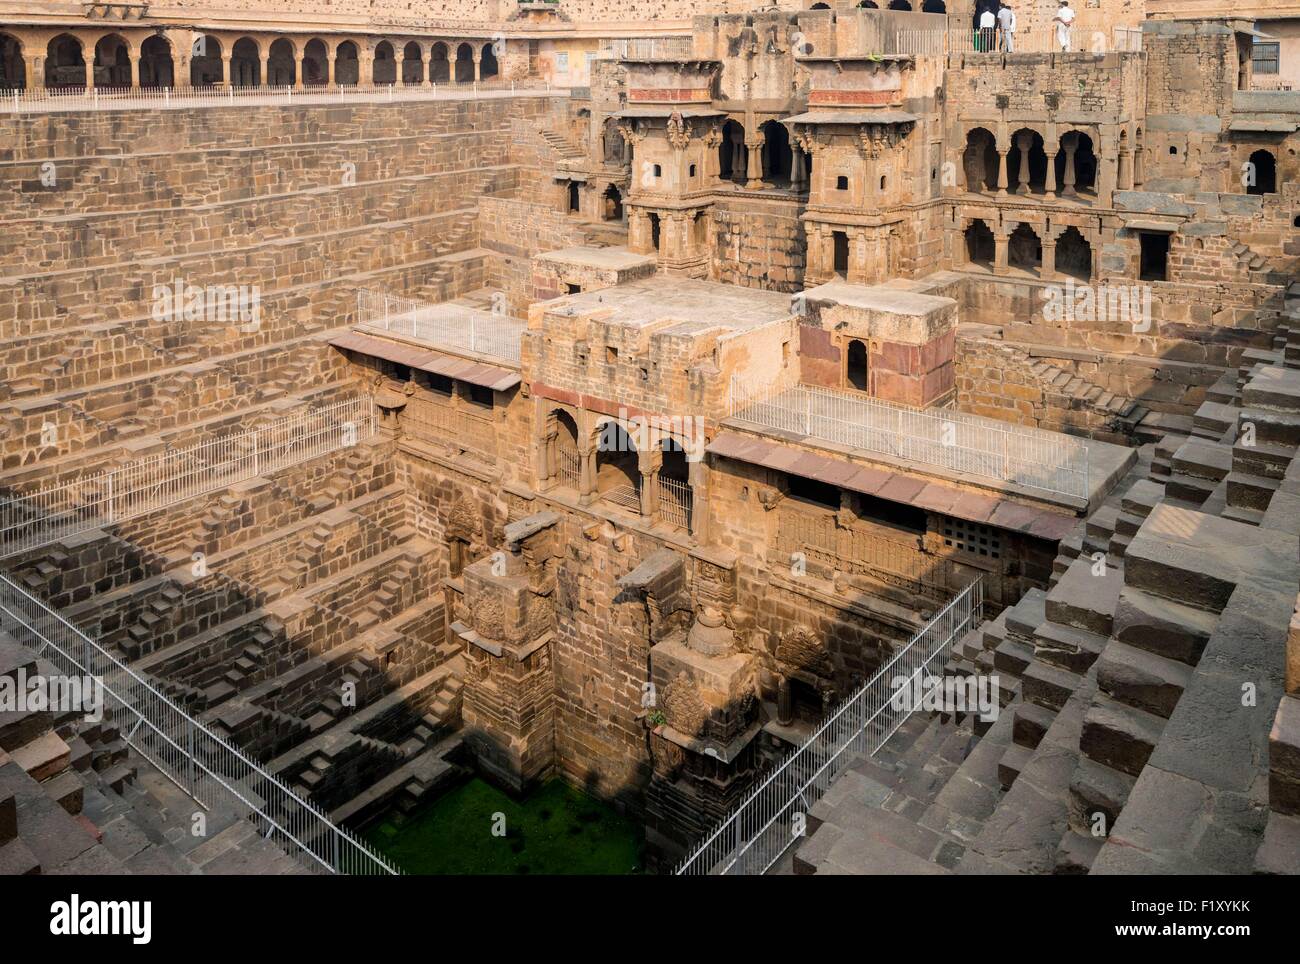 Indien, Rajasthan state, Abhaneri, Chand Baori ist die größte Stufenbrunnen in Indien Stockfoto